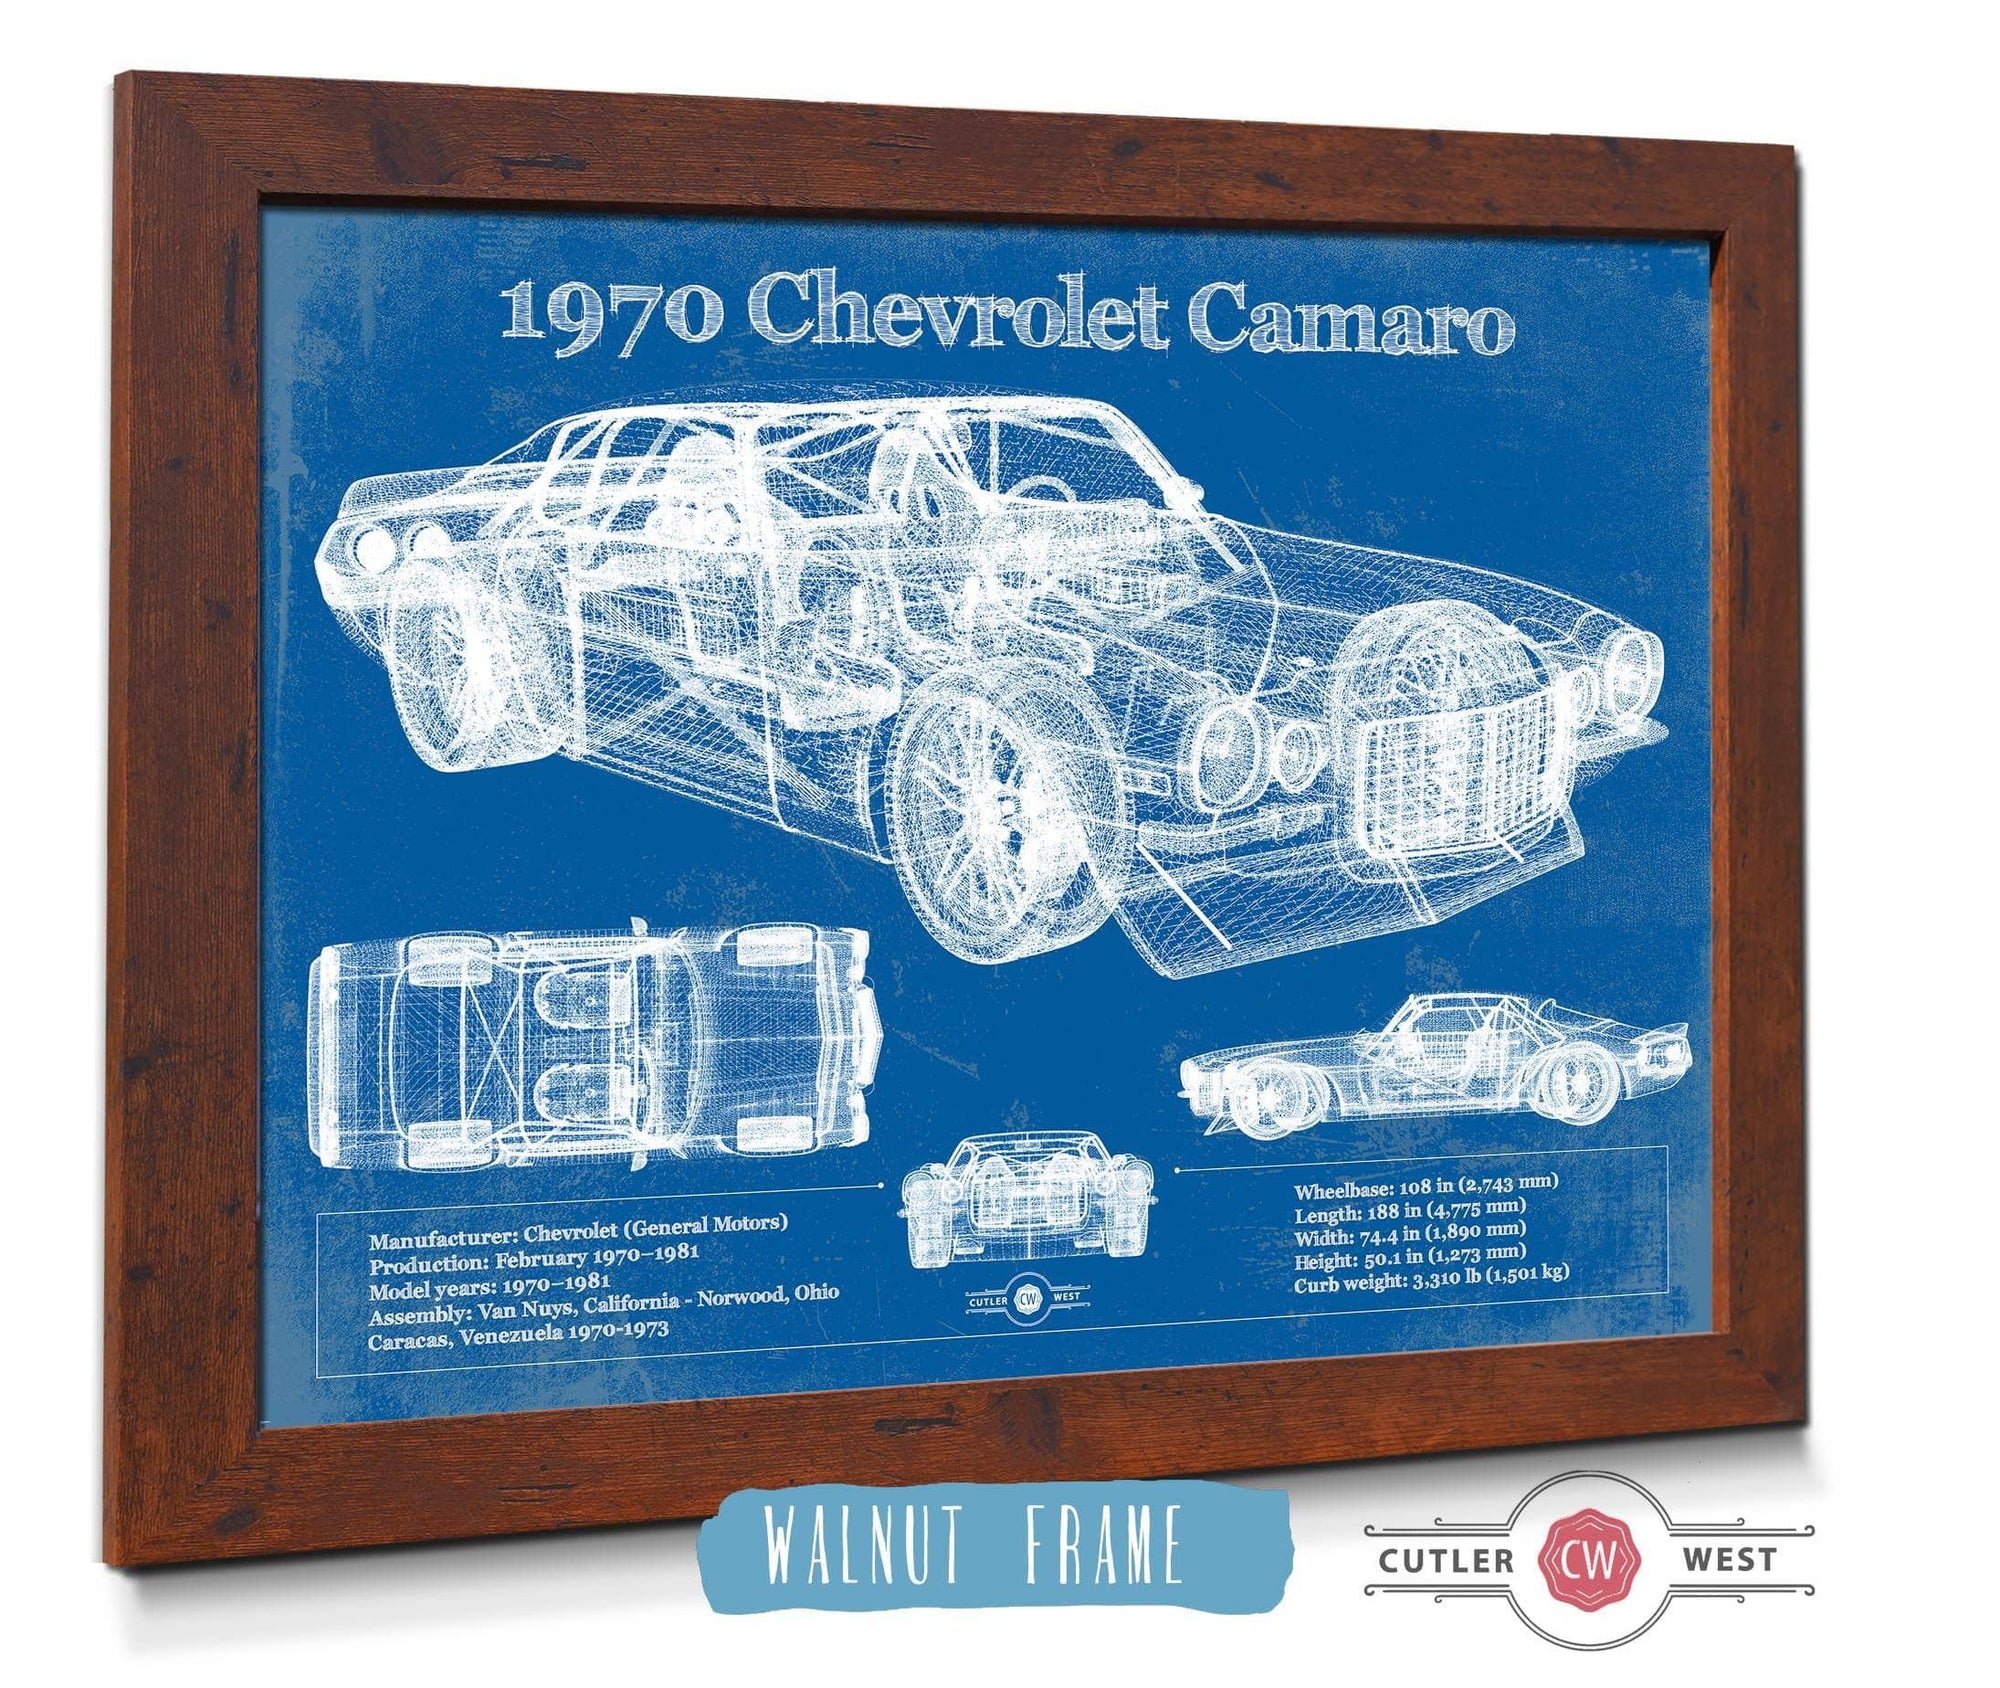 Cutler West Chevrolet Collection 1970 Chevrolet Split Bumper Camaro Blueprint Vintage Auto Patent Print